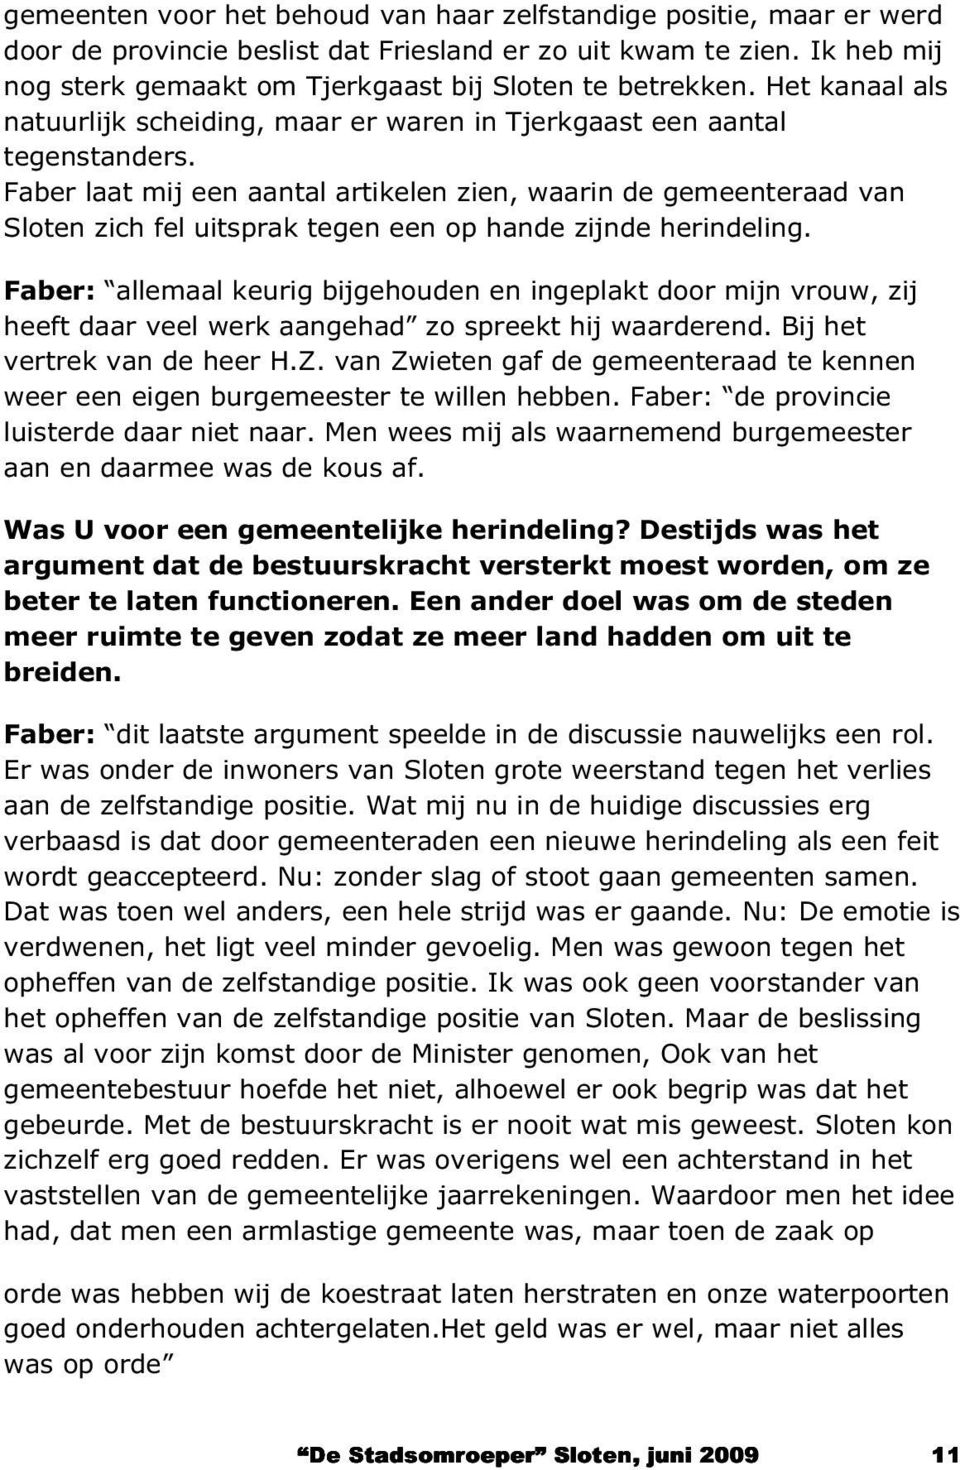 Faber laat mij een aantal artikelen zien, waarin de gemeenteraad van Sloten zich fel uitsprak tegen een op hande zijnde herindeling.